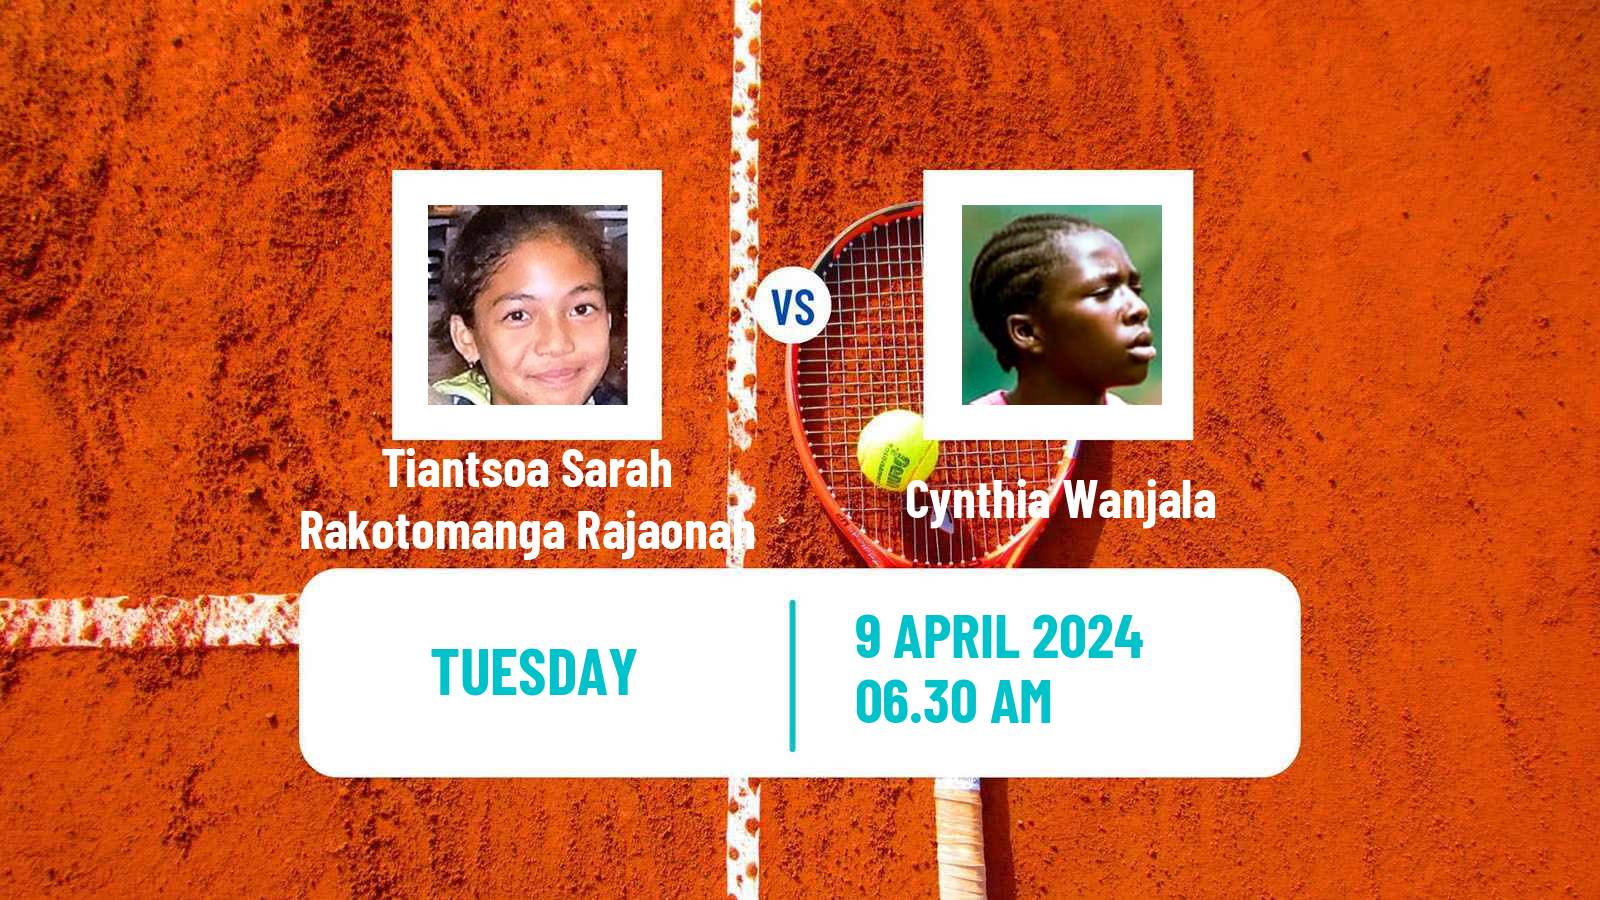 Tennis ITF W35 Bujumbura 2 Women Tiantsoa Sarah Rakotomanga Rajaonah - Cynthia Wanjala